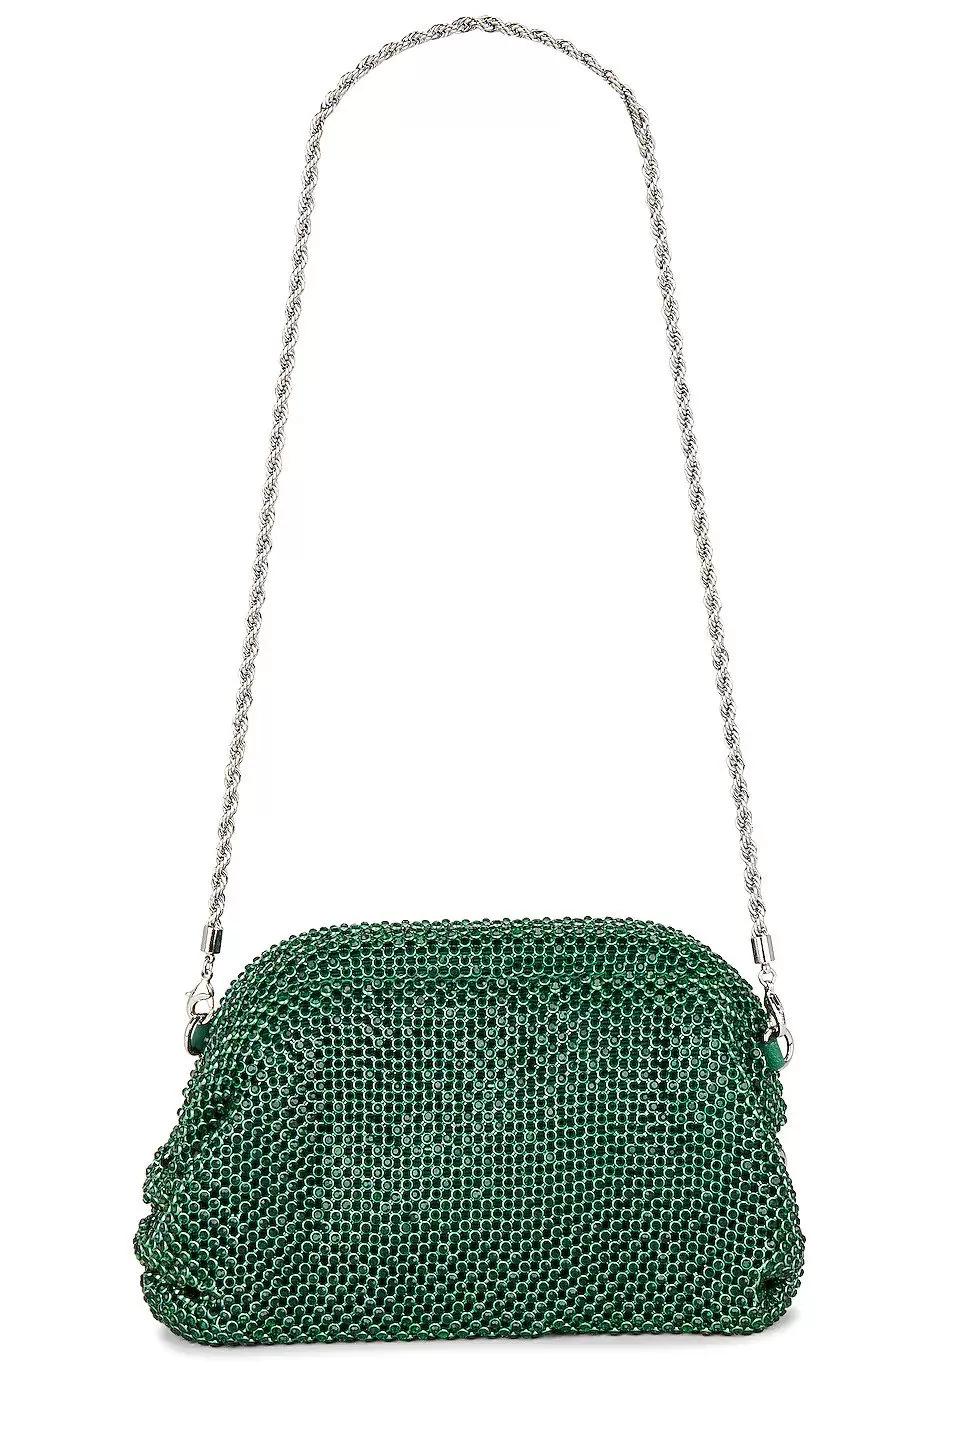 Doris Handbag in Emerald Loeffler Randall